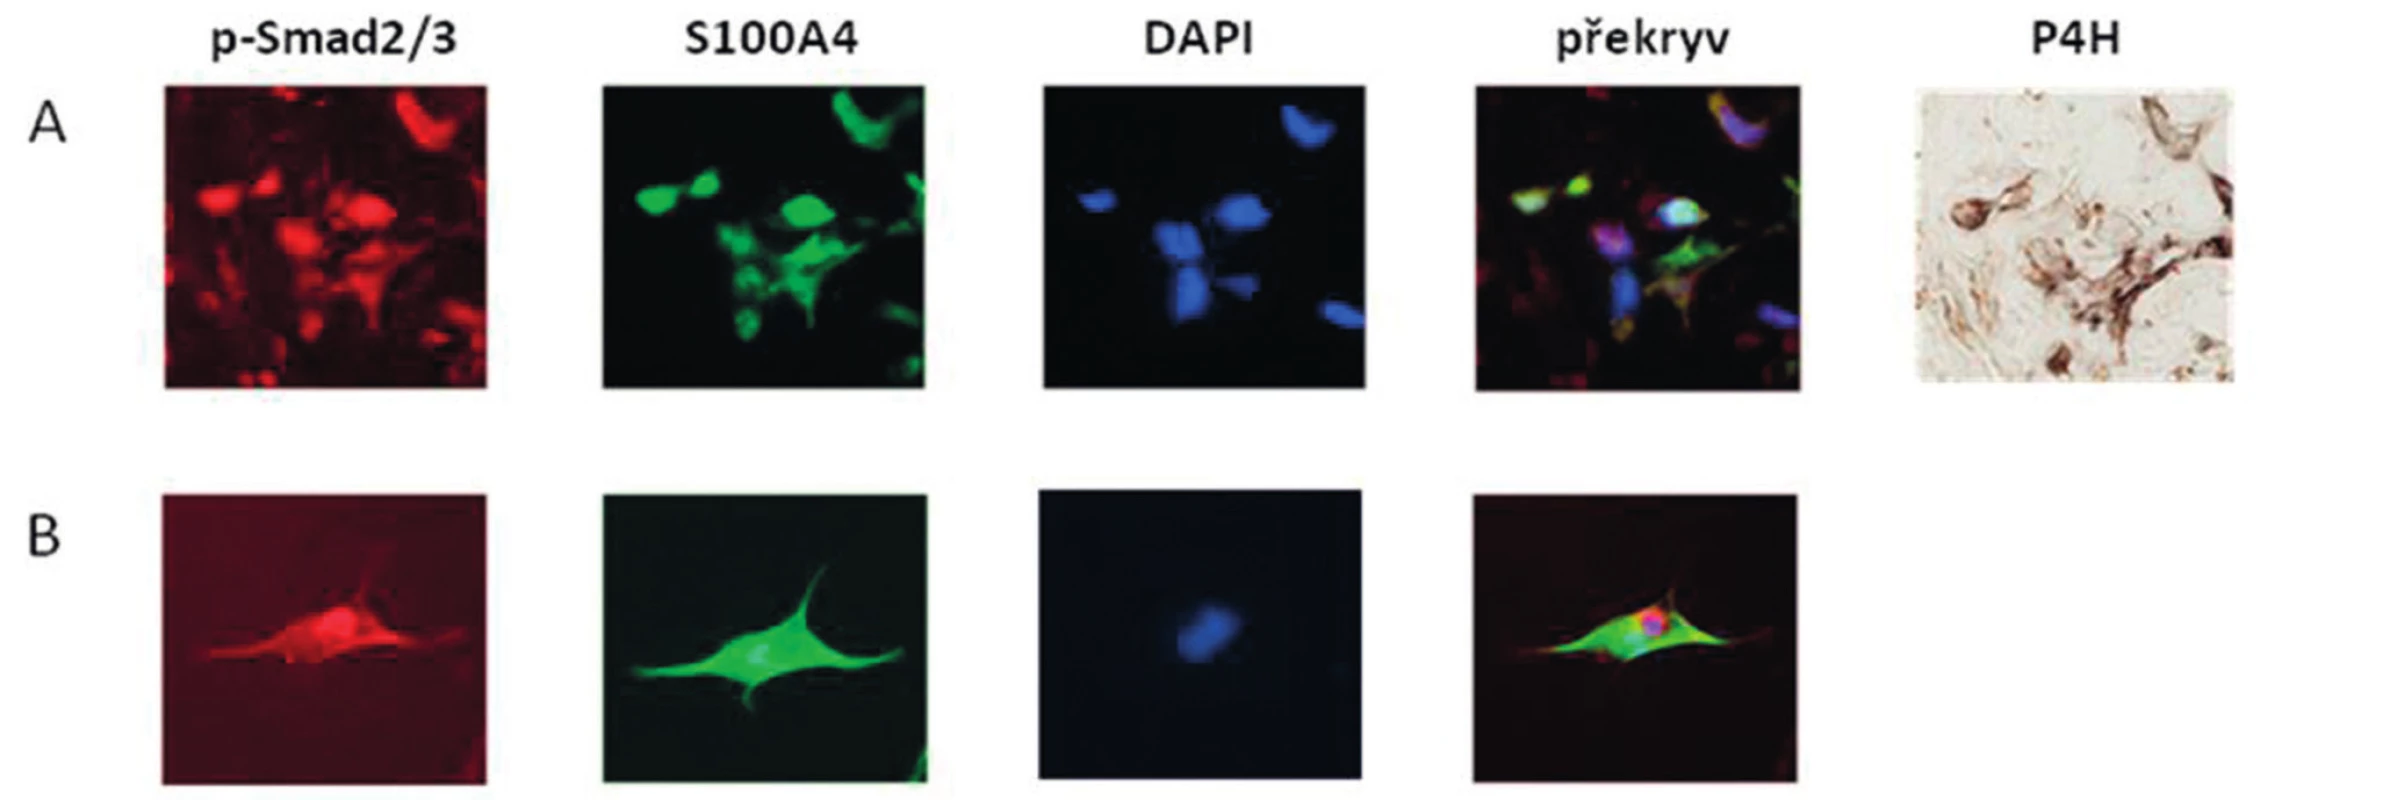 Kolokalizace exprese S100A4 a p-Smad2/3 v SSc kůži a v aktivovaných fibroblastech.